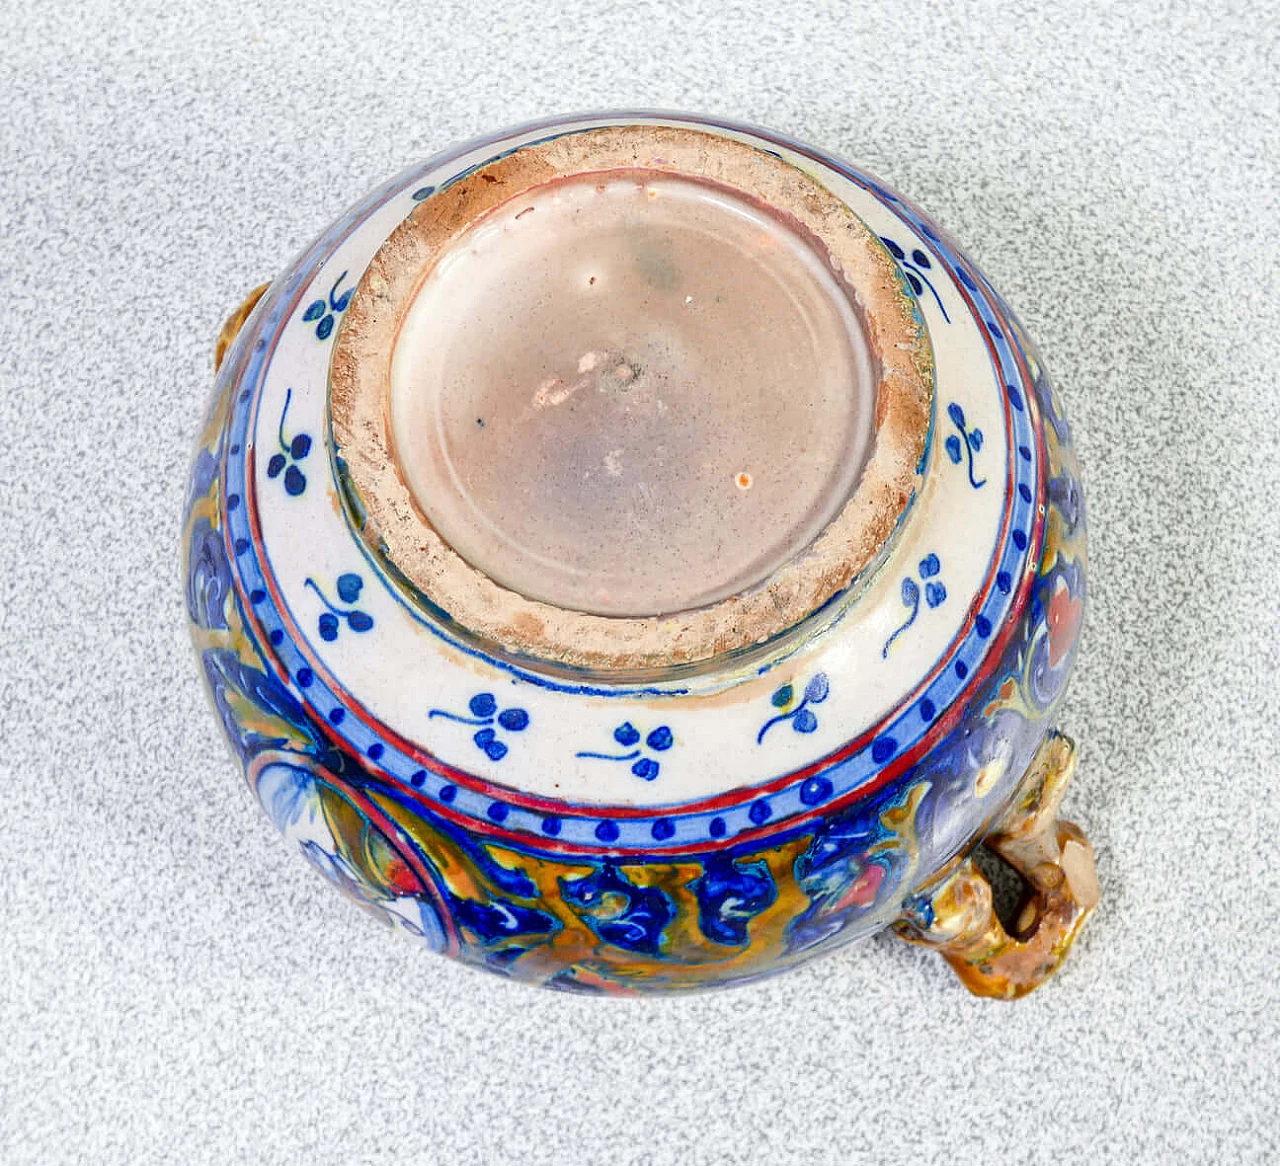 Ceramic teapot and sugar bowl by Mastro Giorgio Gualdo Tadino, early 20th century 15